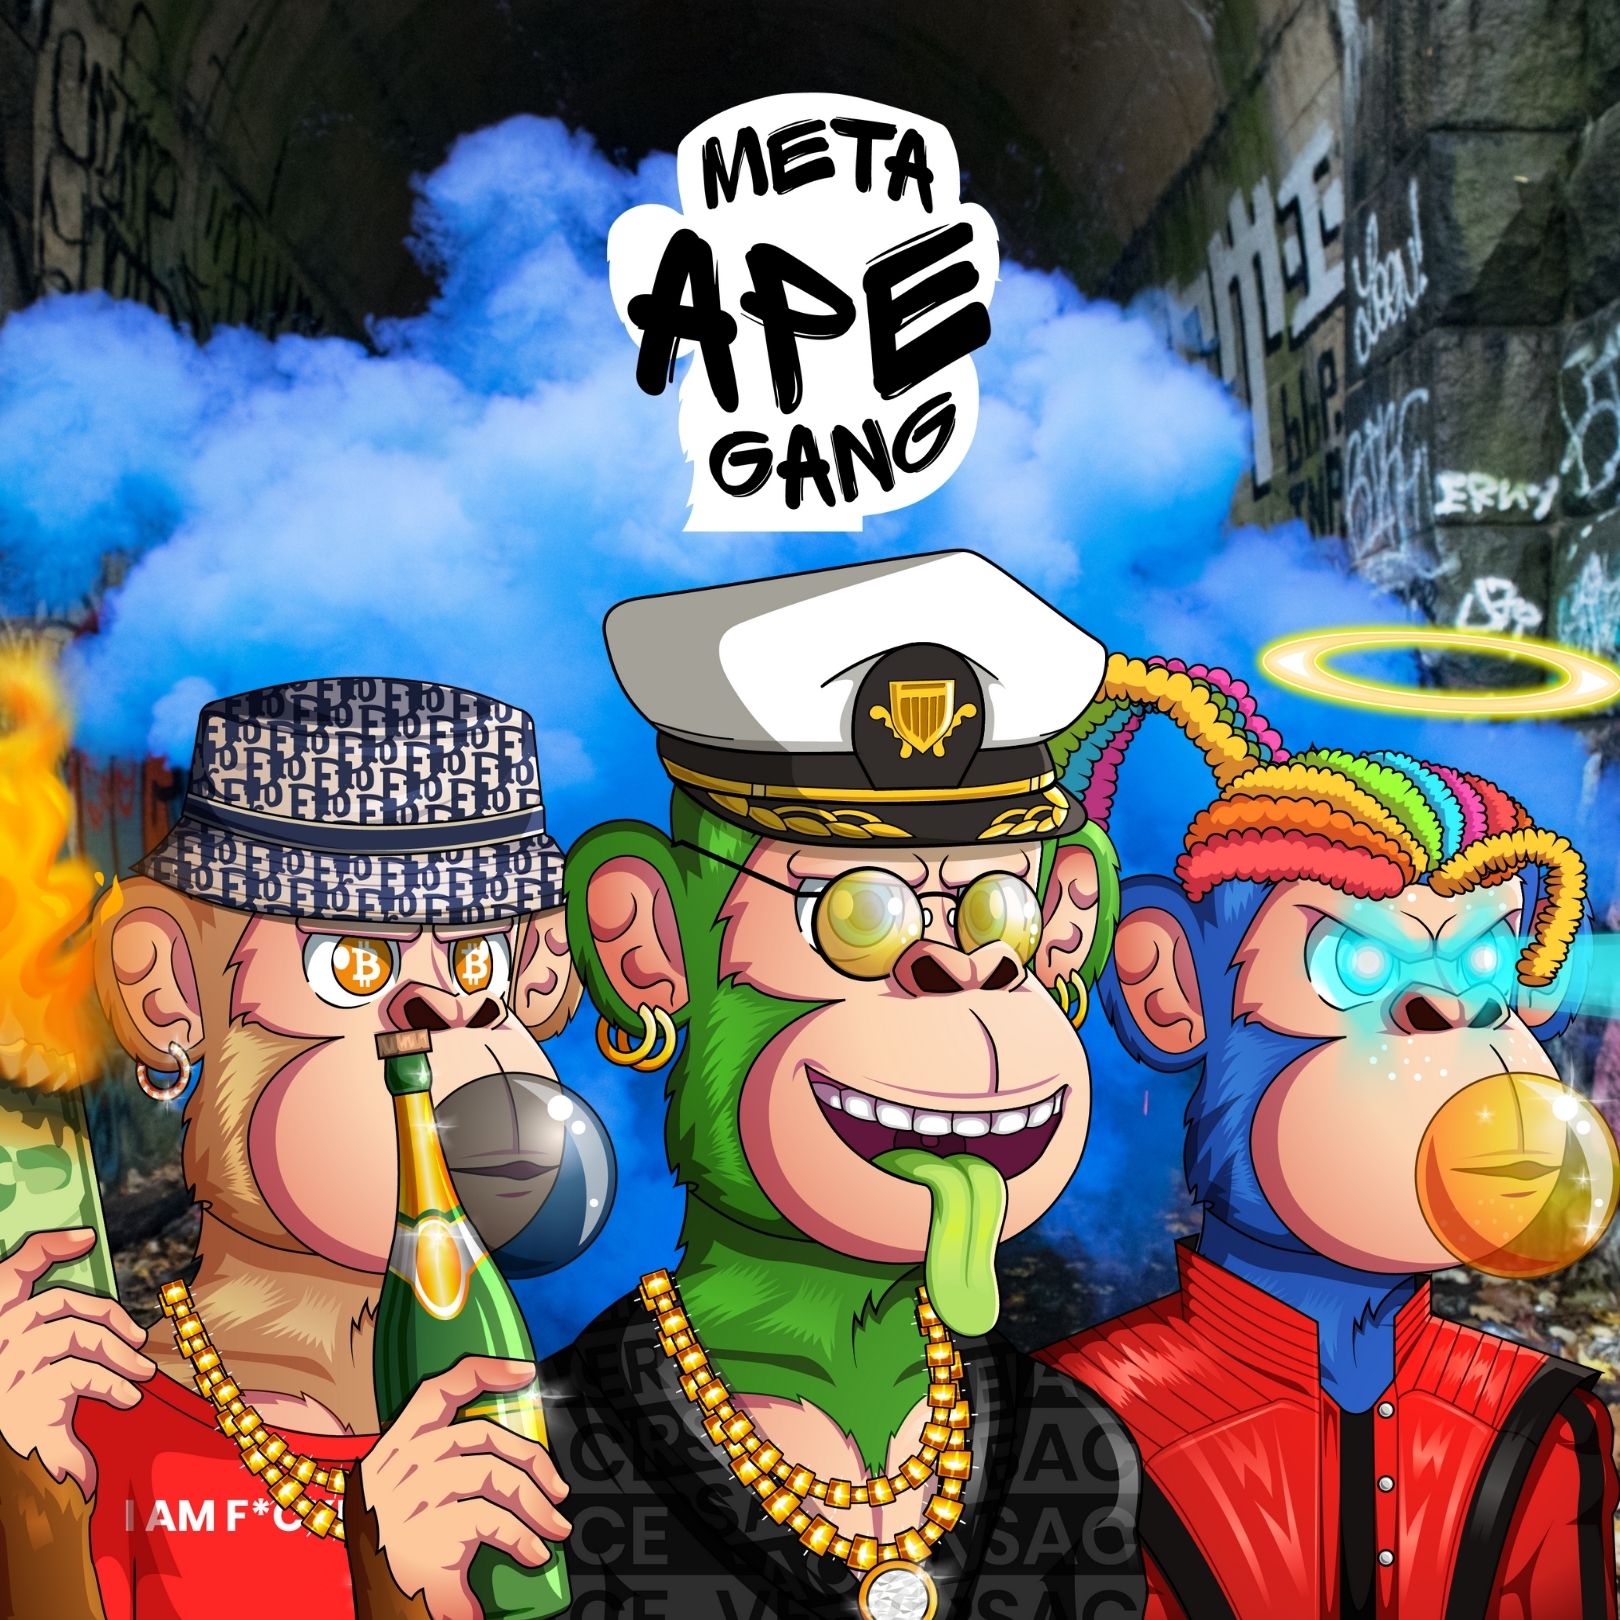 Meta Ape Gang